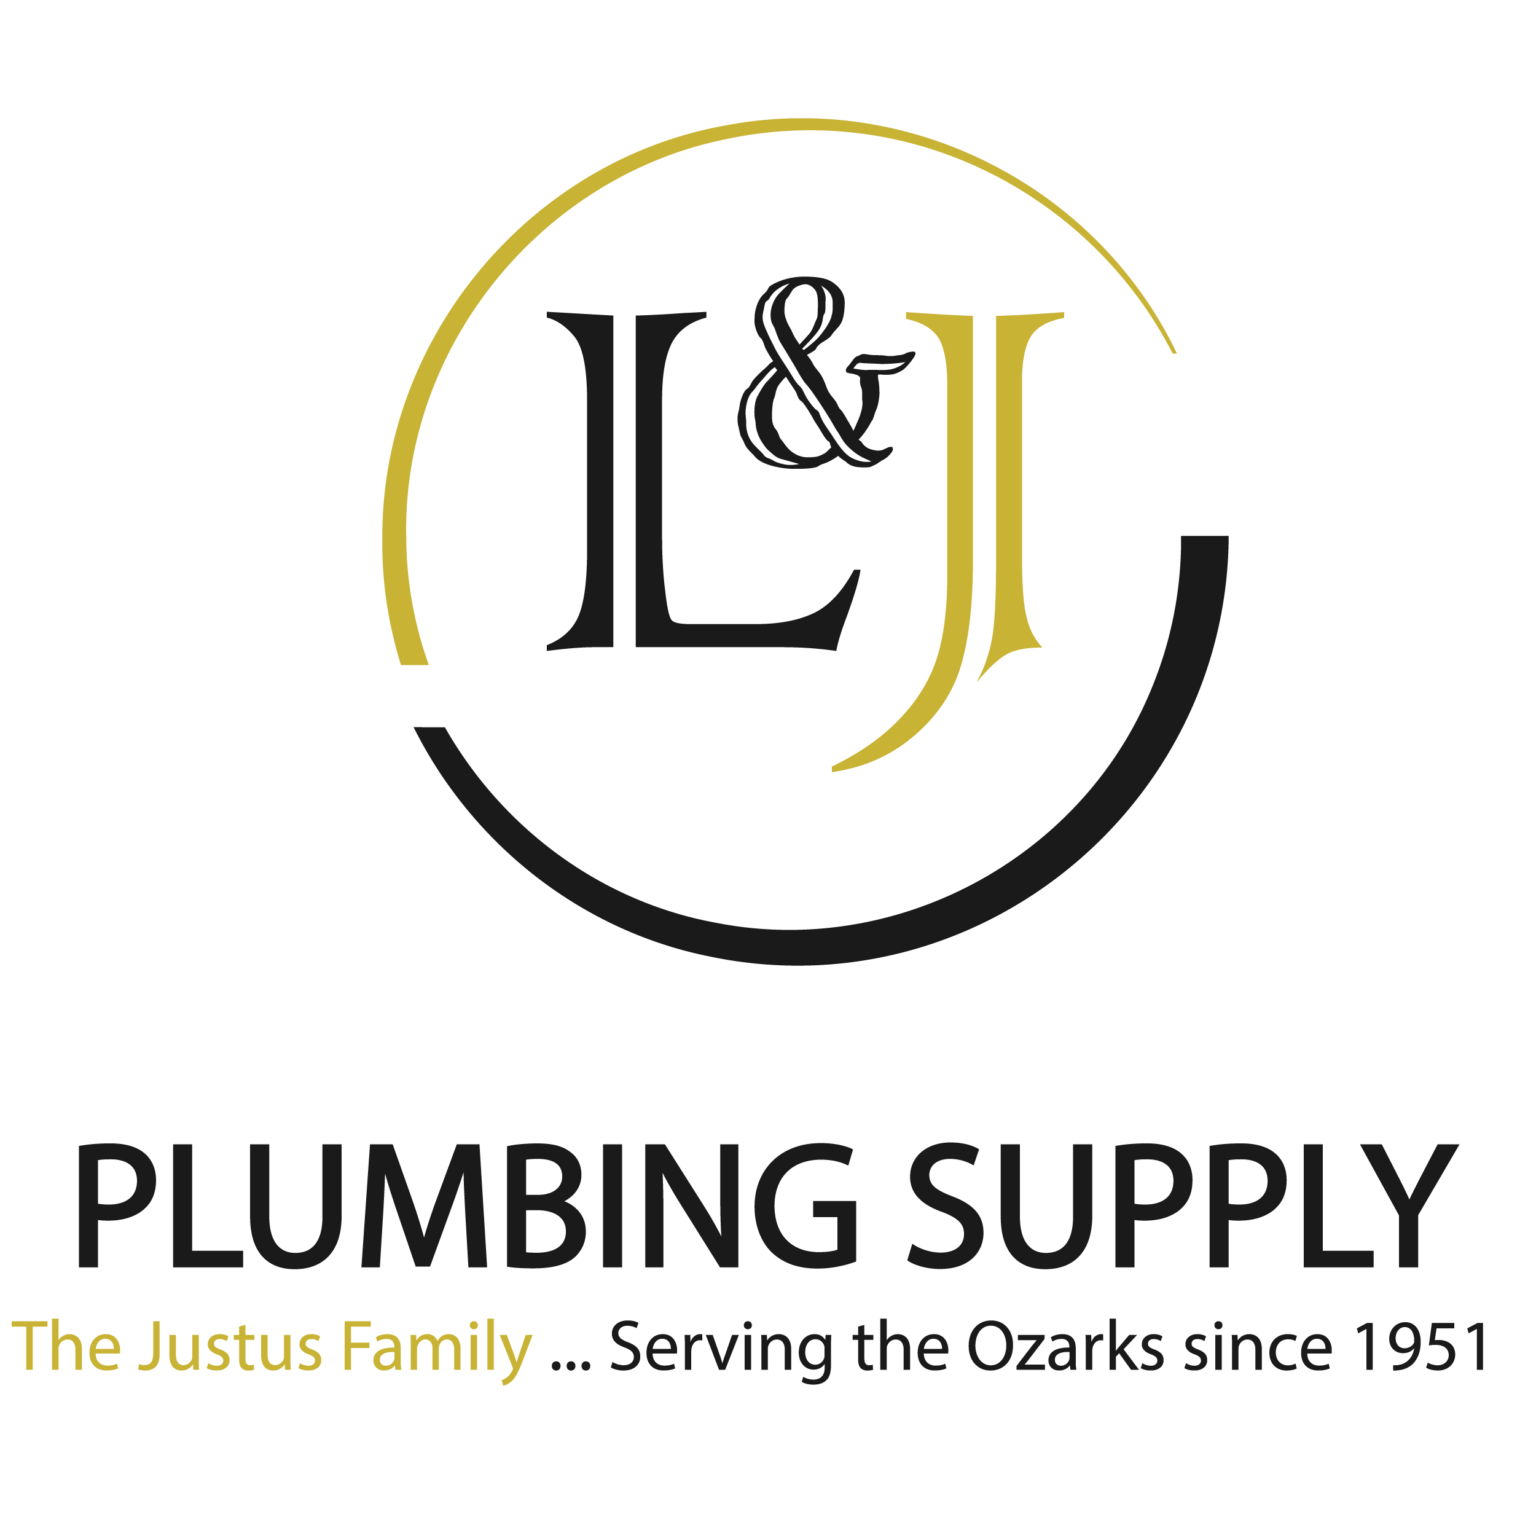 L&J Plumbing Supply Logo